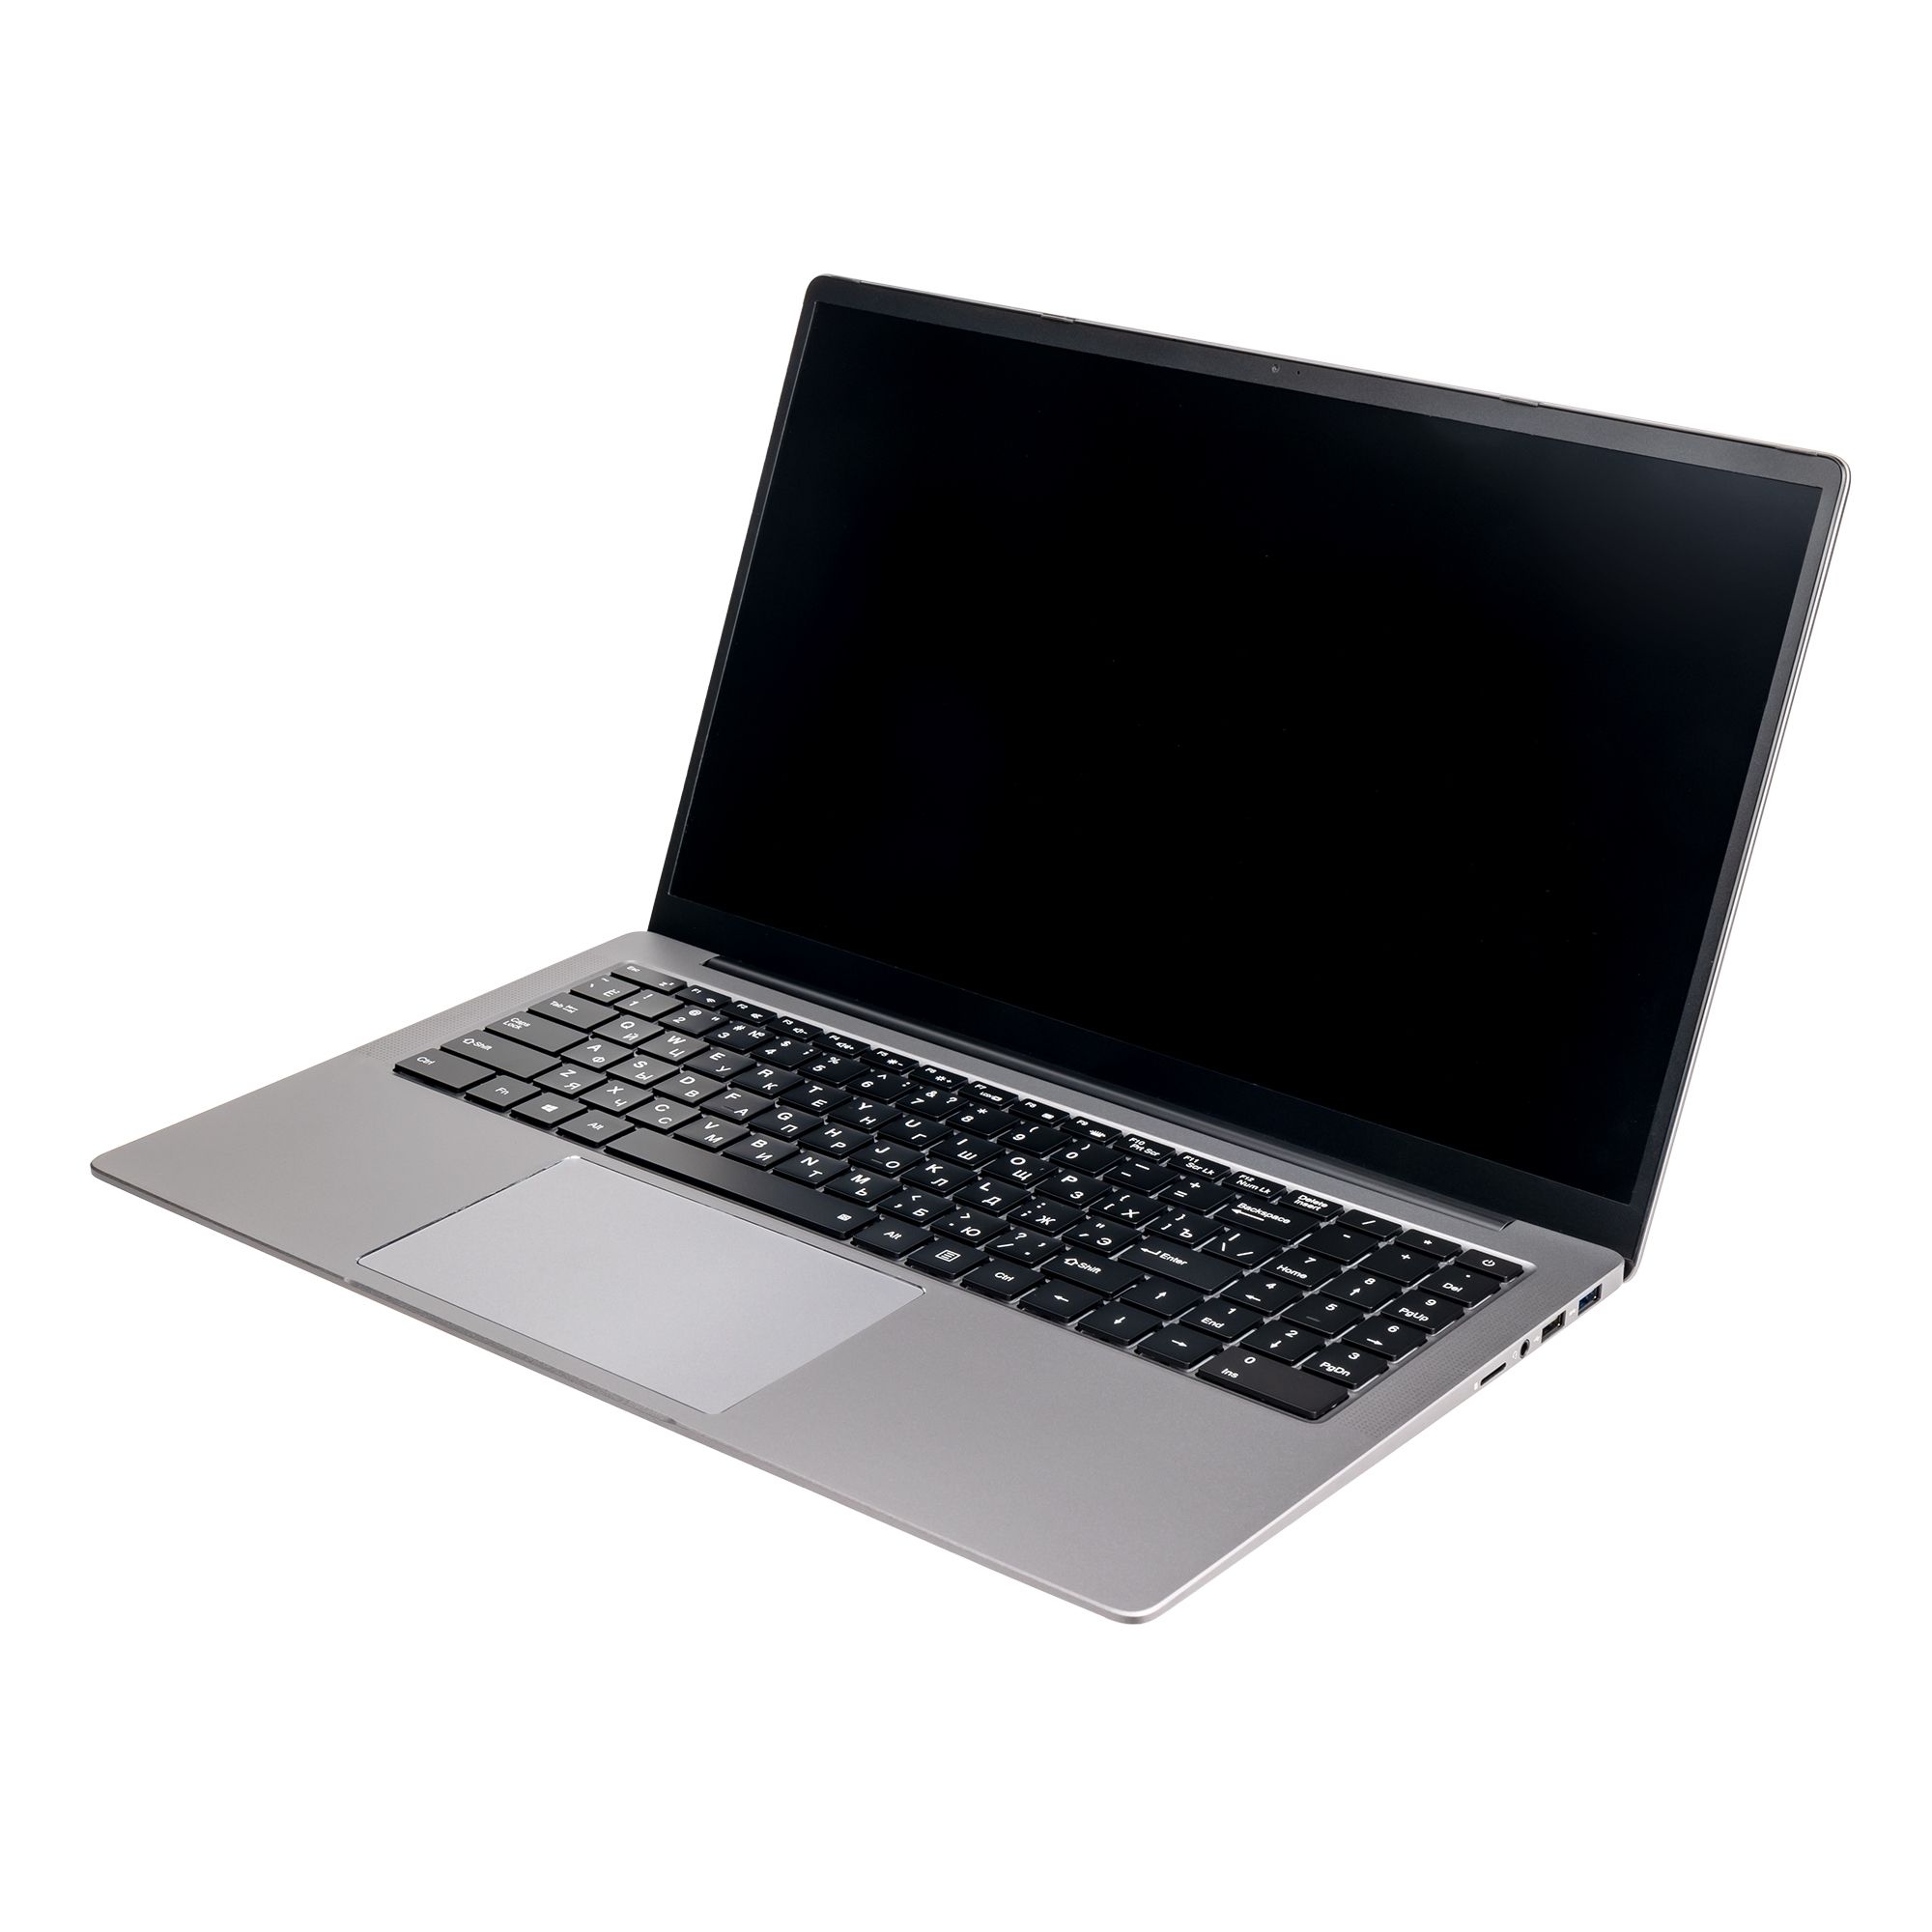 Ноутбук Hiper Expertbook MTL1601 (MTL1601B1235UDS) цена и фото